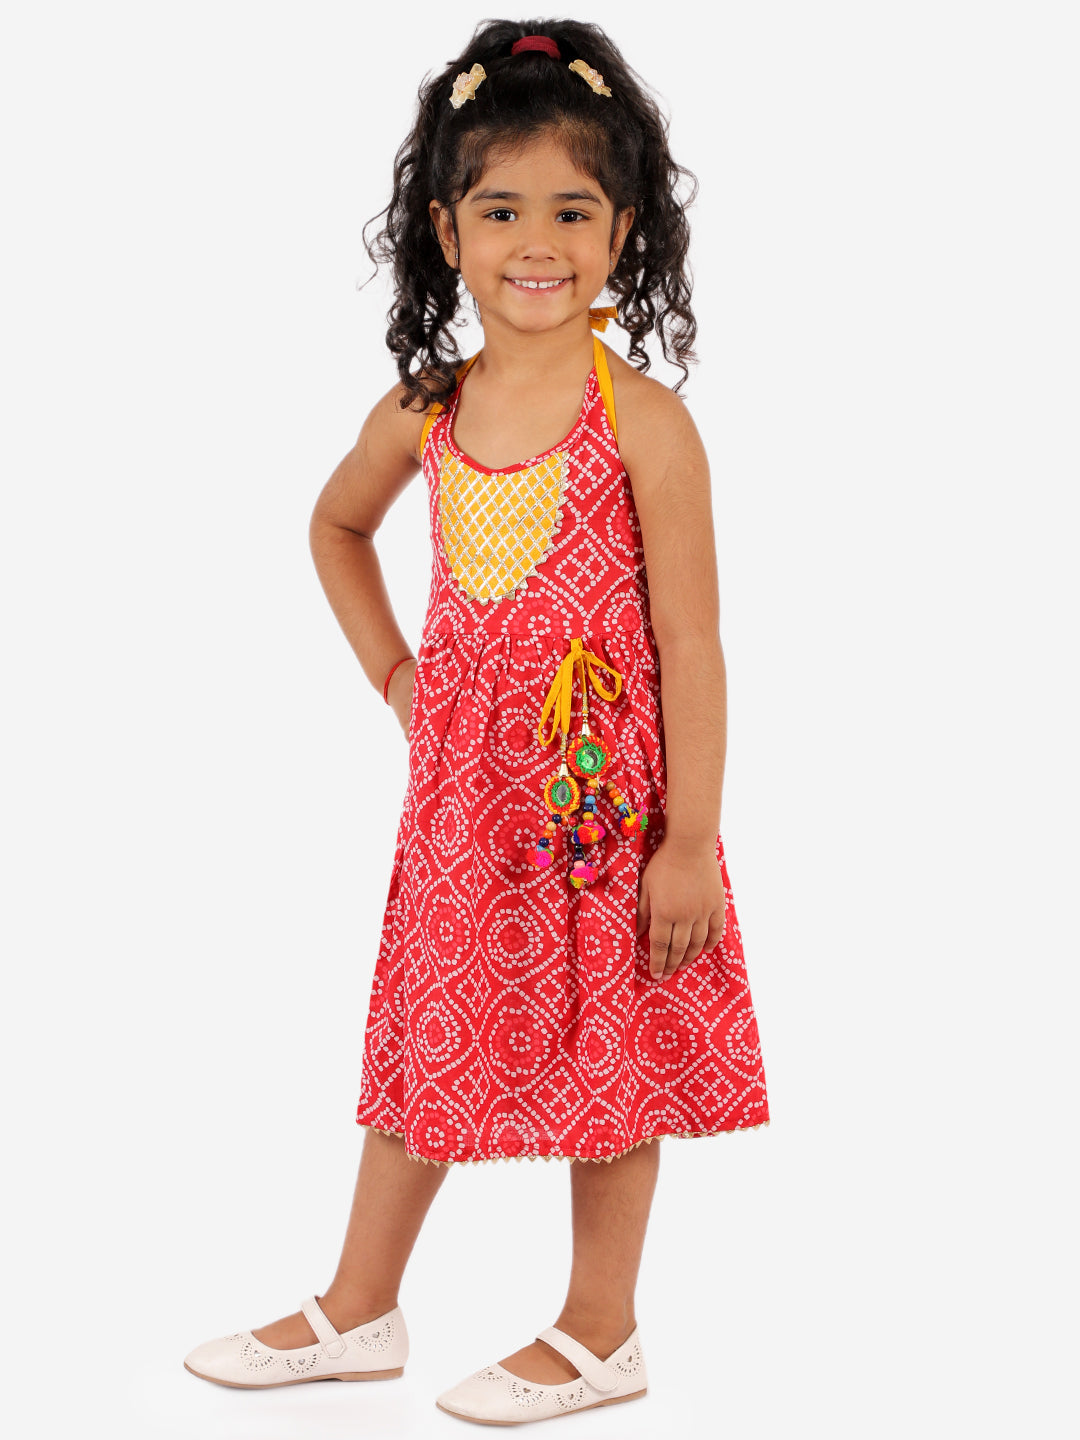 Bandhani Dress for Girls -  KID1 Girls